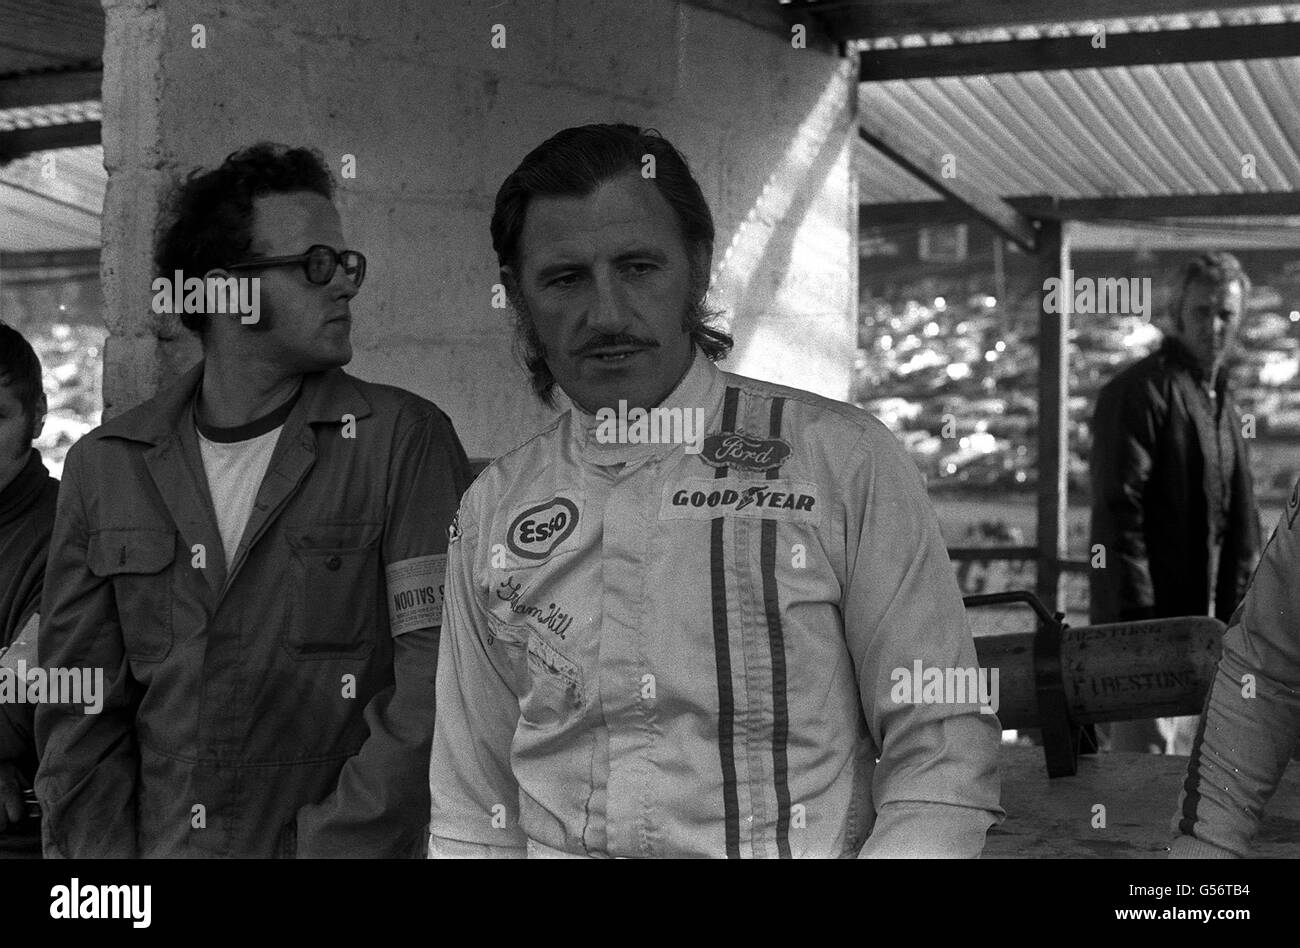 GRAHAM HILL 1971: Graham Hill, de 42 años, dos veces campeón mundial de  carreras de automóviles, que luchó de regreso a la cima después de romper  ambas piernas en un accidente de